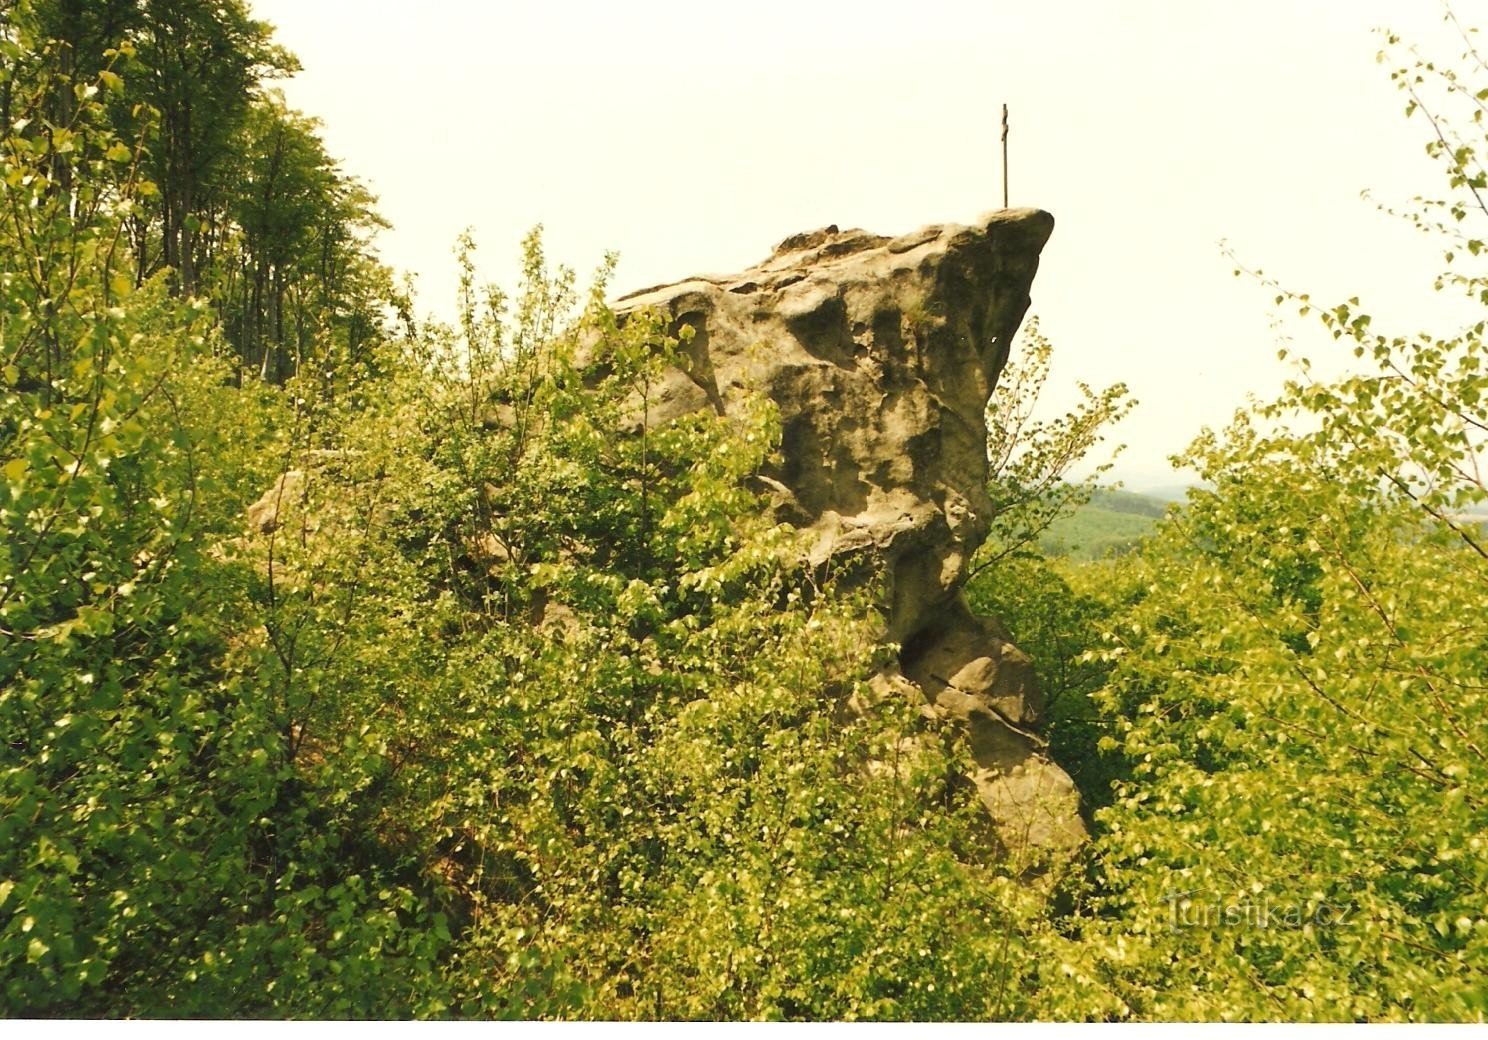 Ambona - górna część skały z krzyżem w 1998 r.